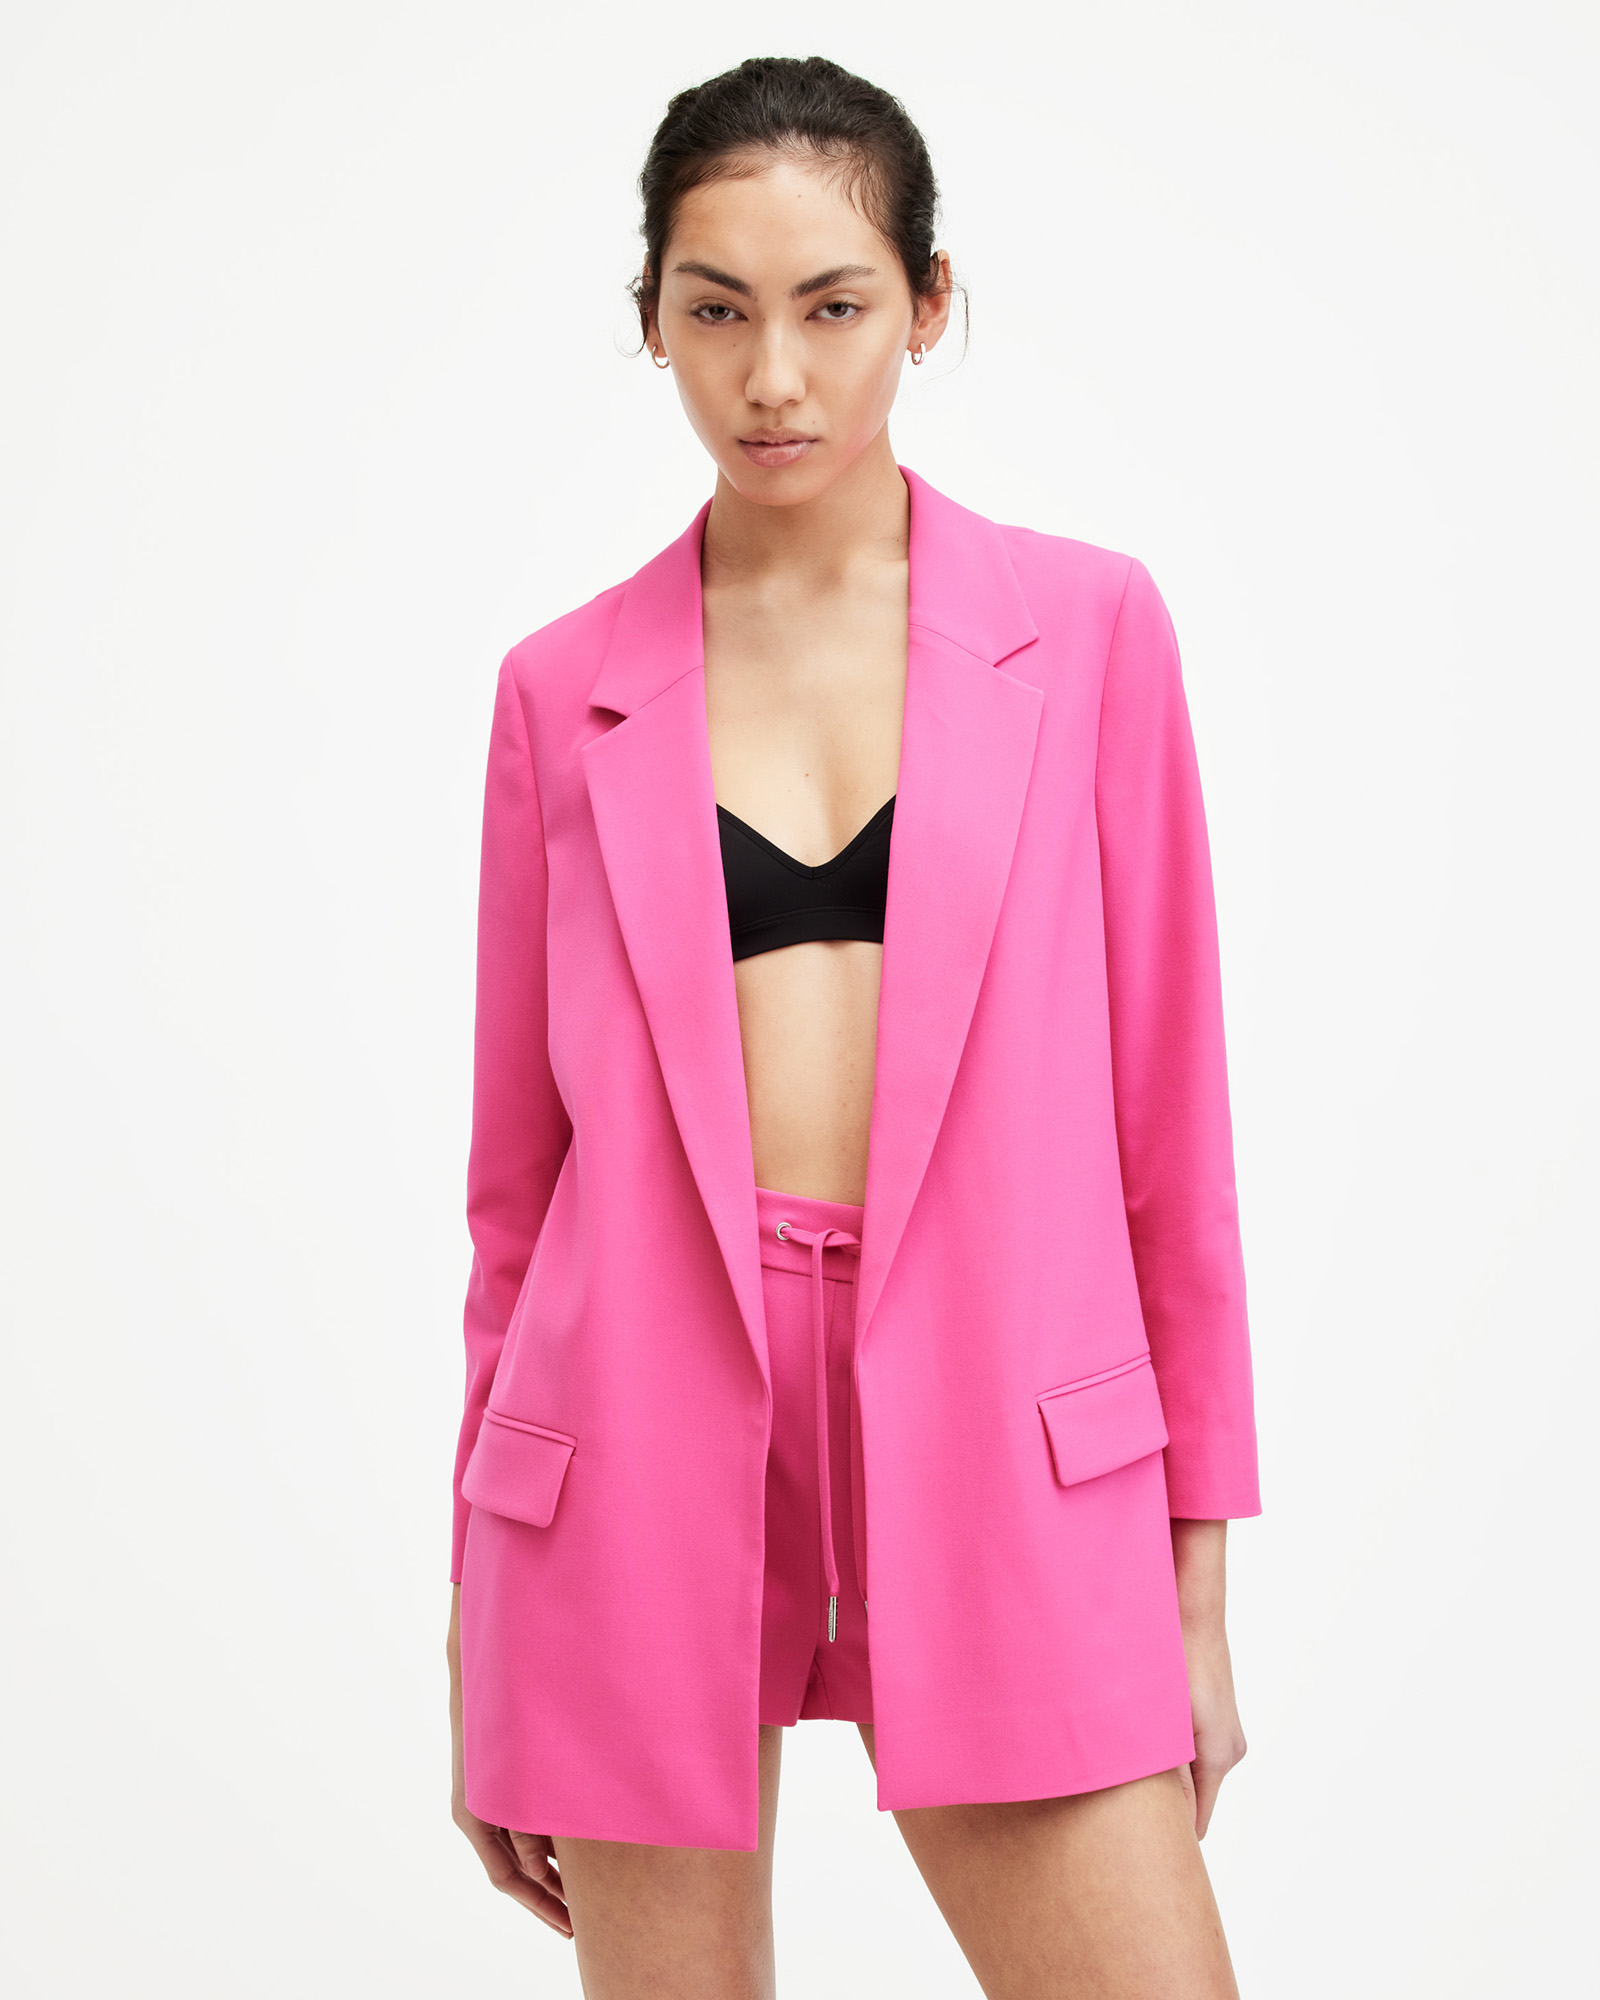 AllSaints Aleida Lightweight Tri Blazer,, Hot Pink